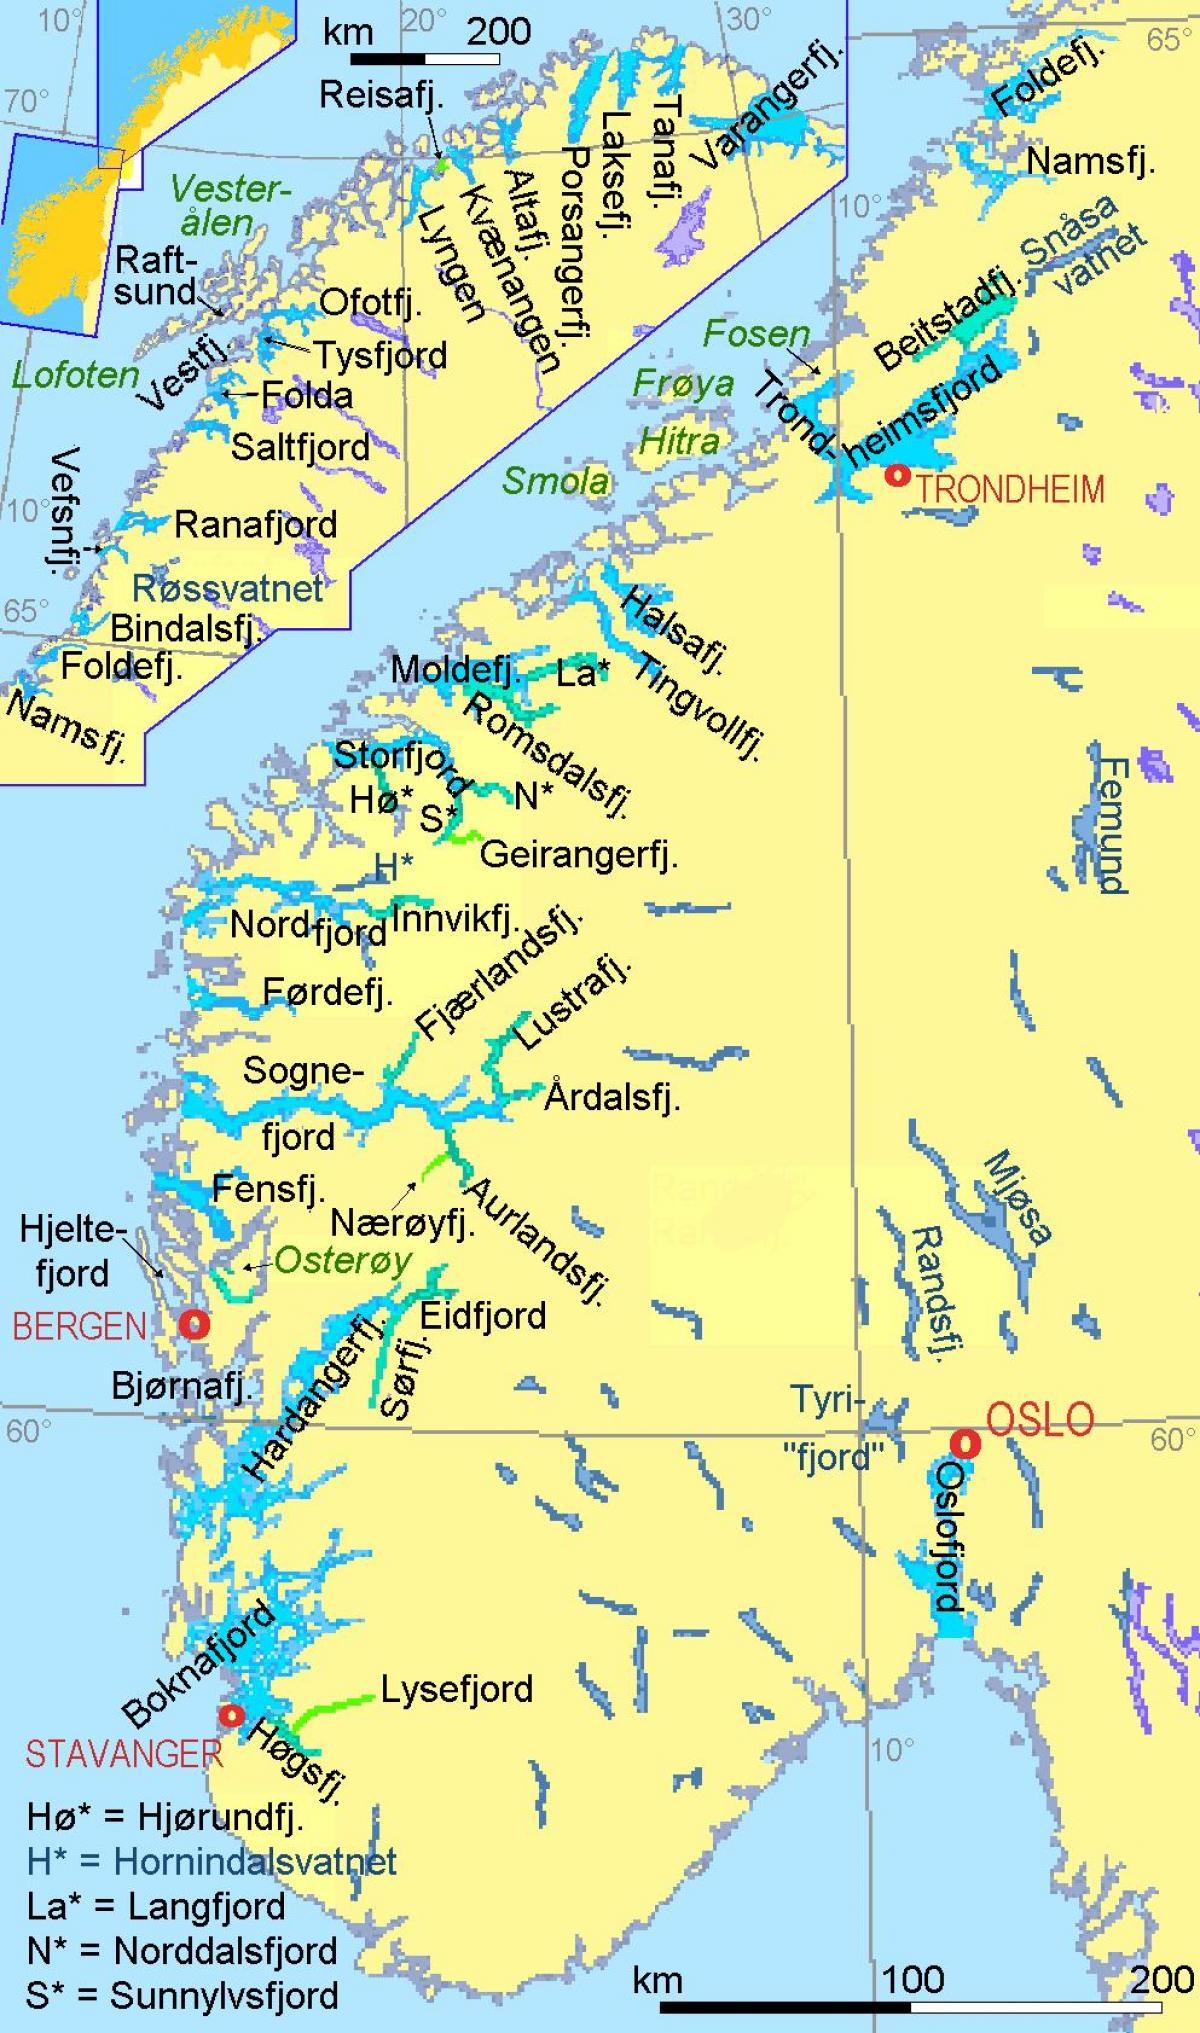 térkép Norvégia mutatja fjordok